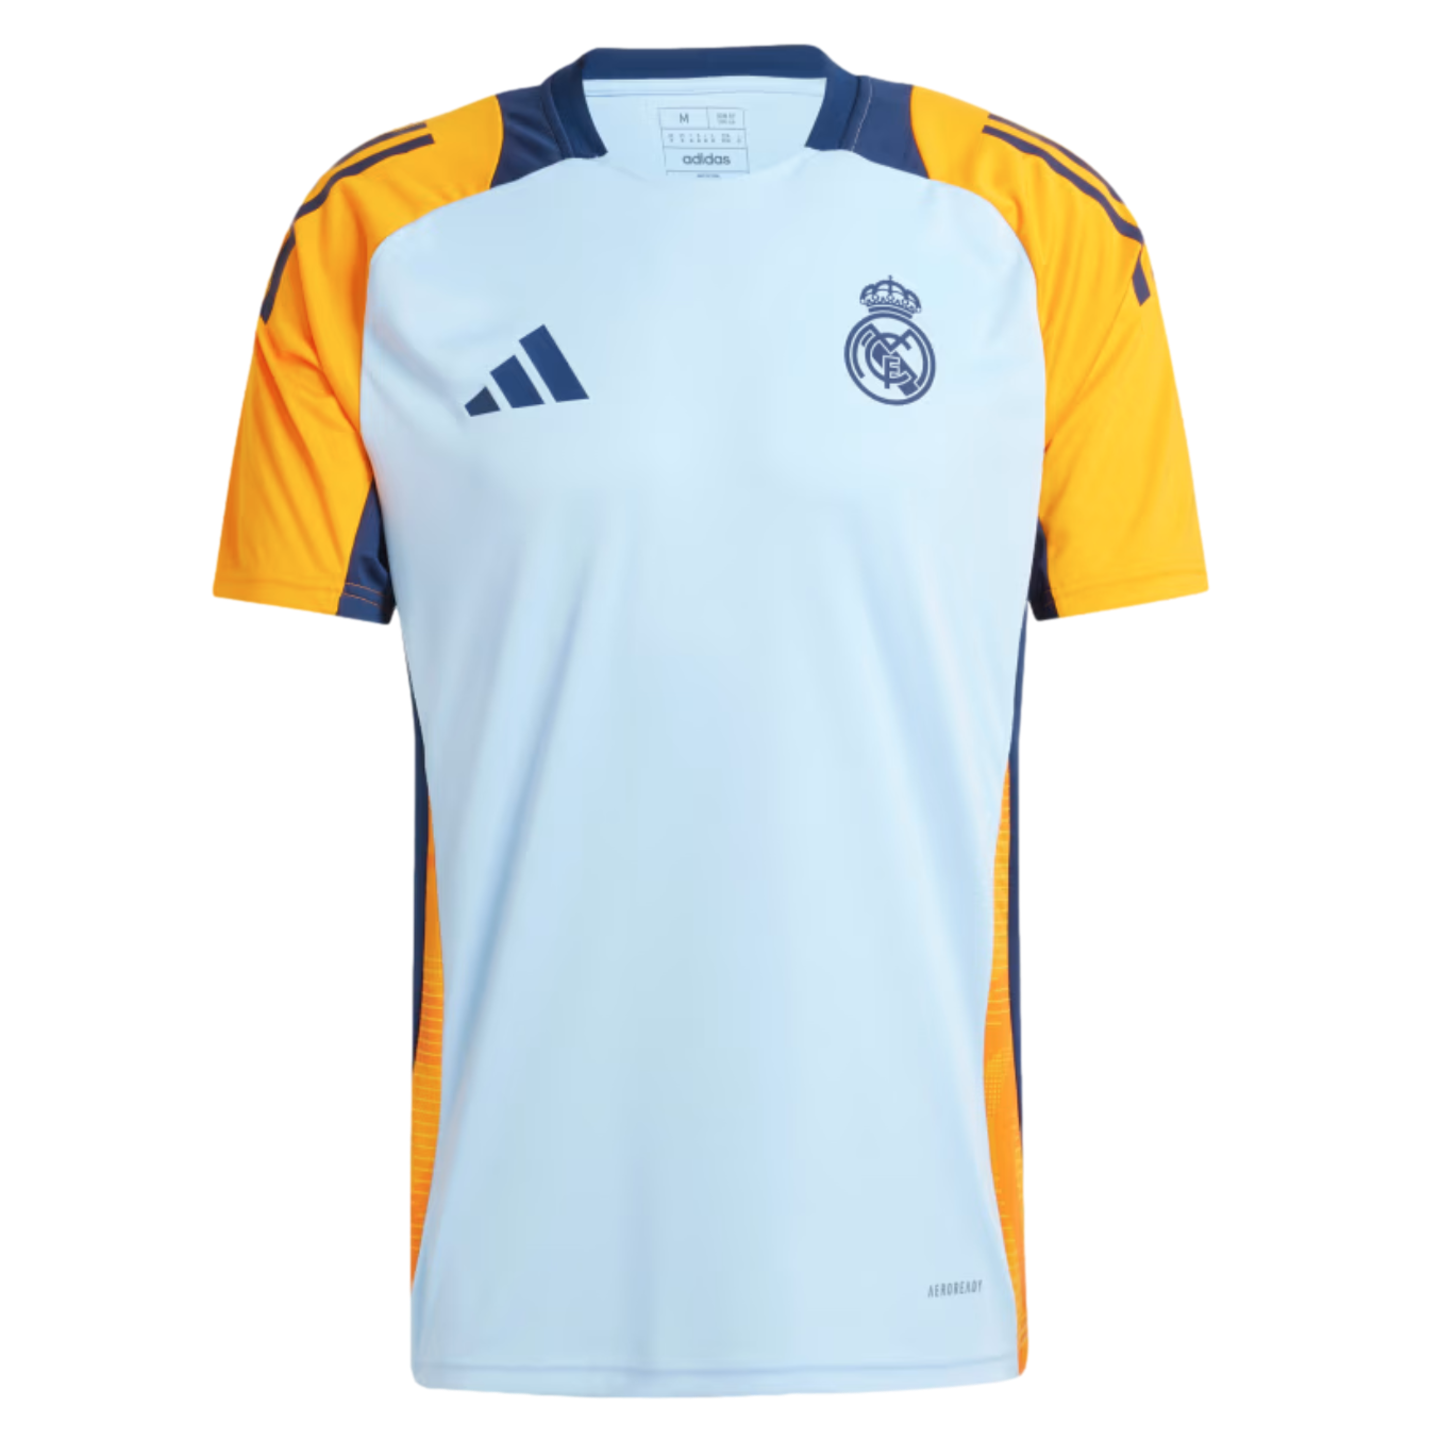 (ADID-IT5125) Camiseta de entrenamiento Adidas Real Madrid [GLOWBLUE,CREORA,TENABL]